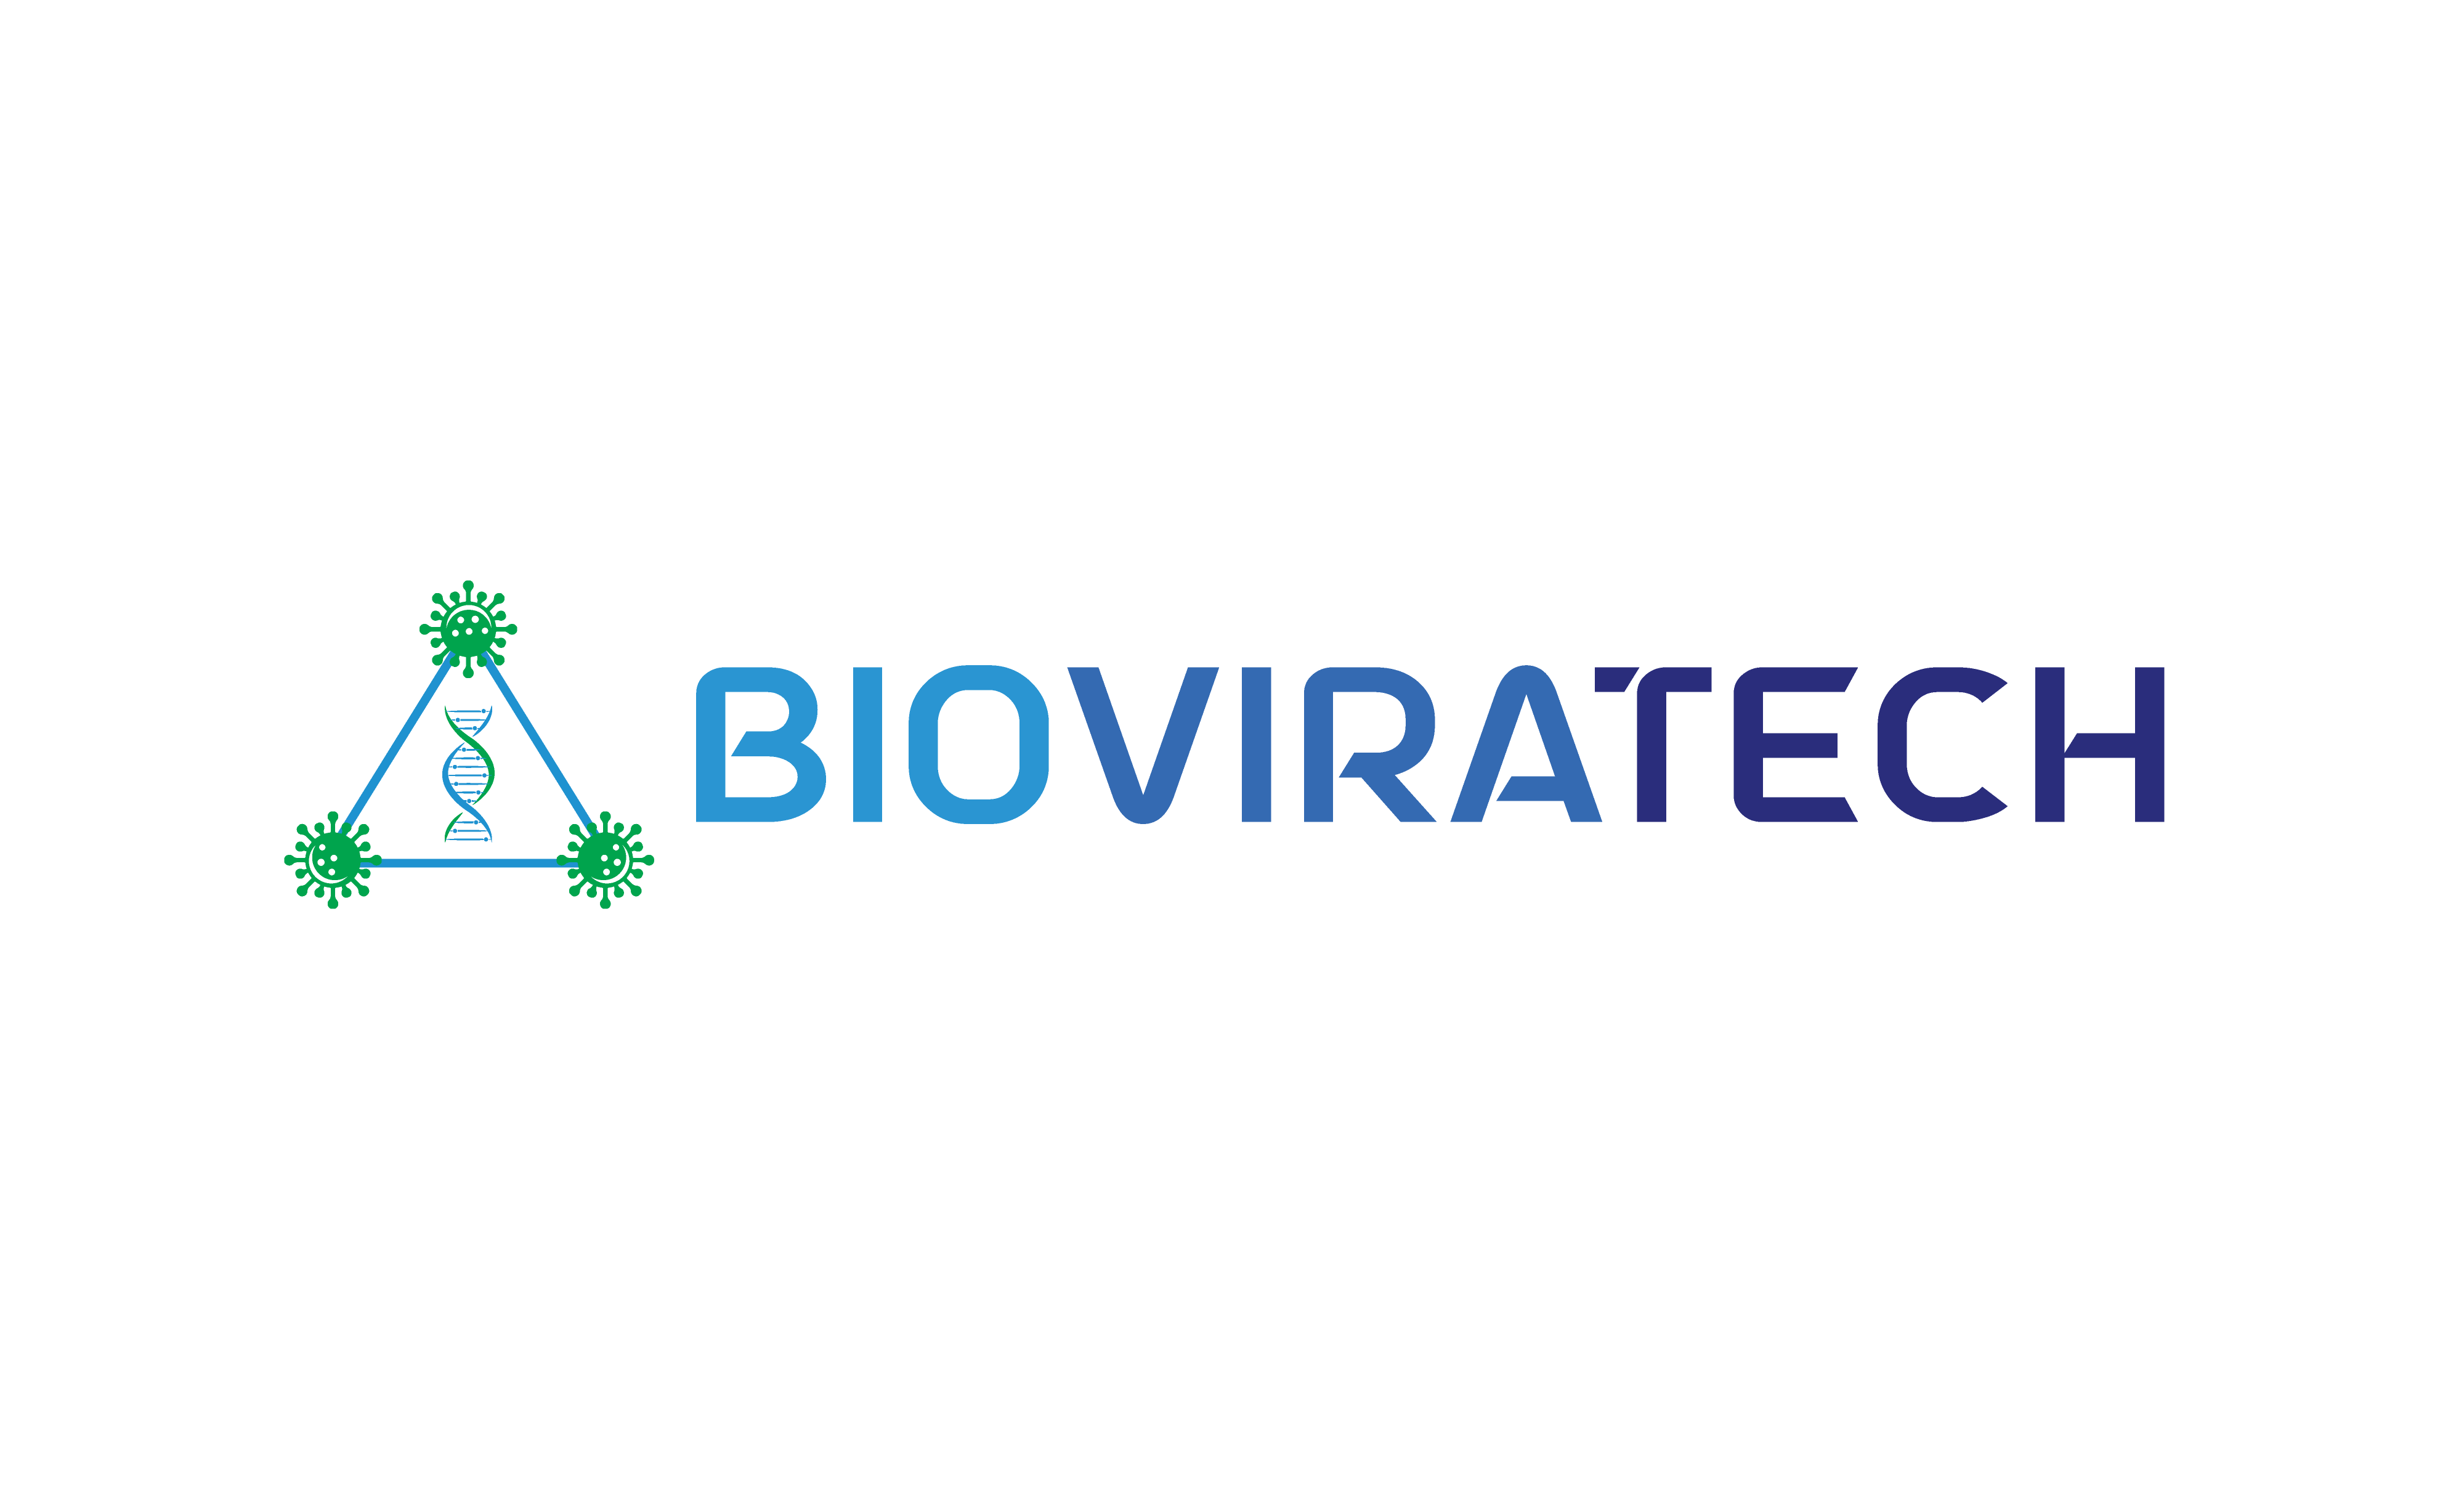 Bioviratech